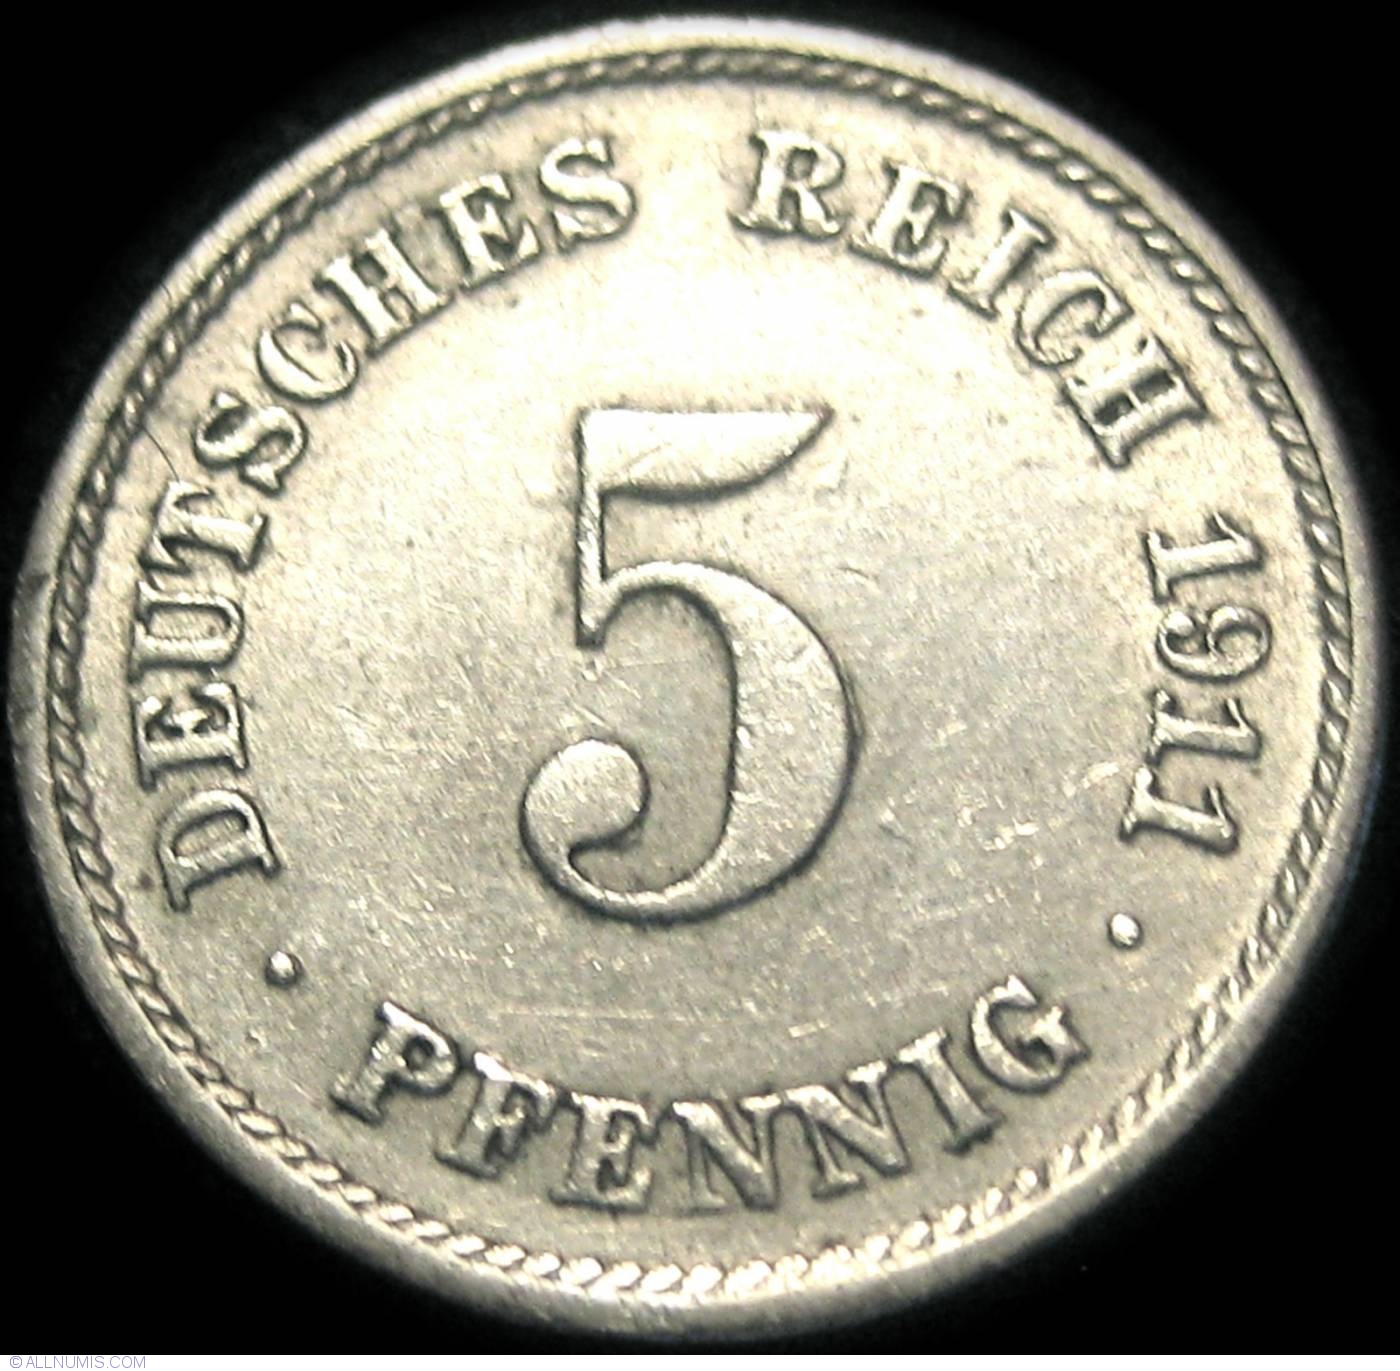 5 Pfennig 1911 F, Wilhelm II (1888-1918) - Germany - Coin - 23353